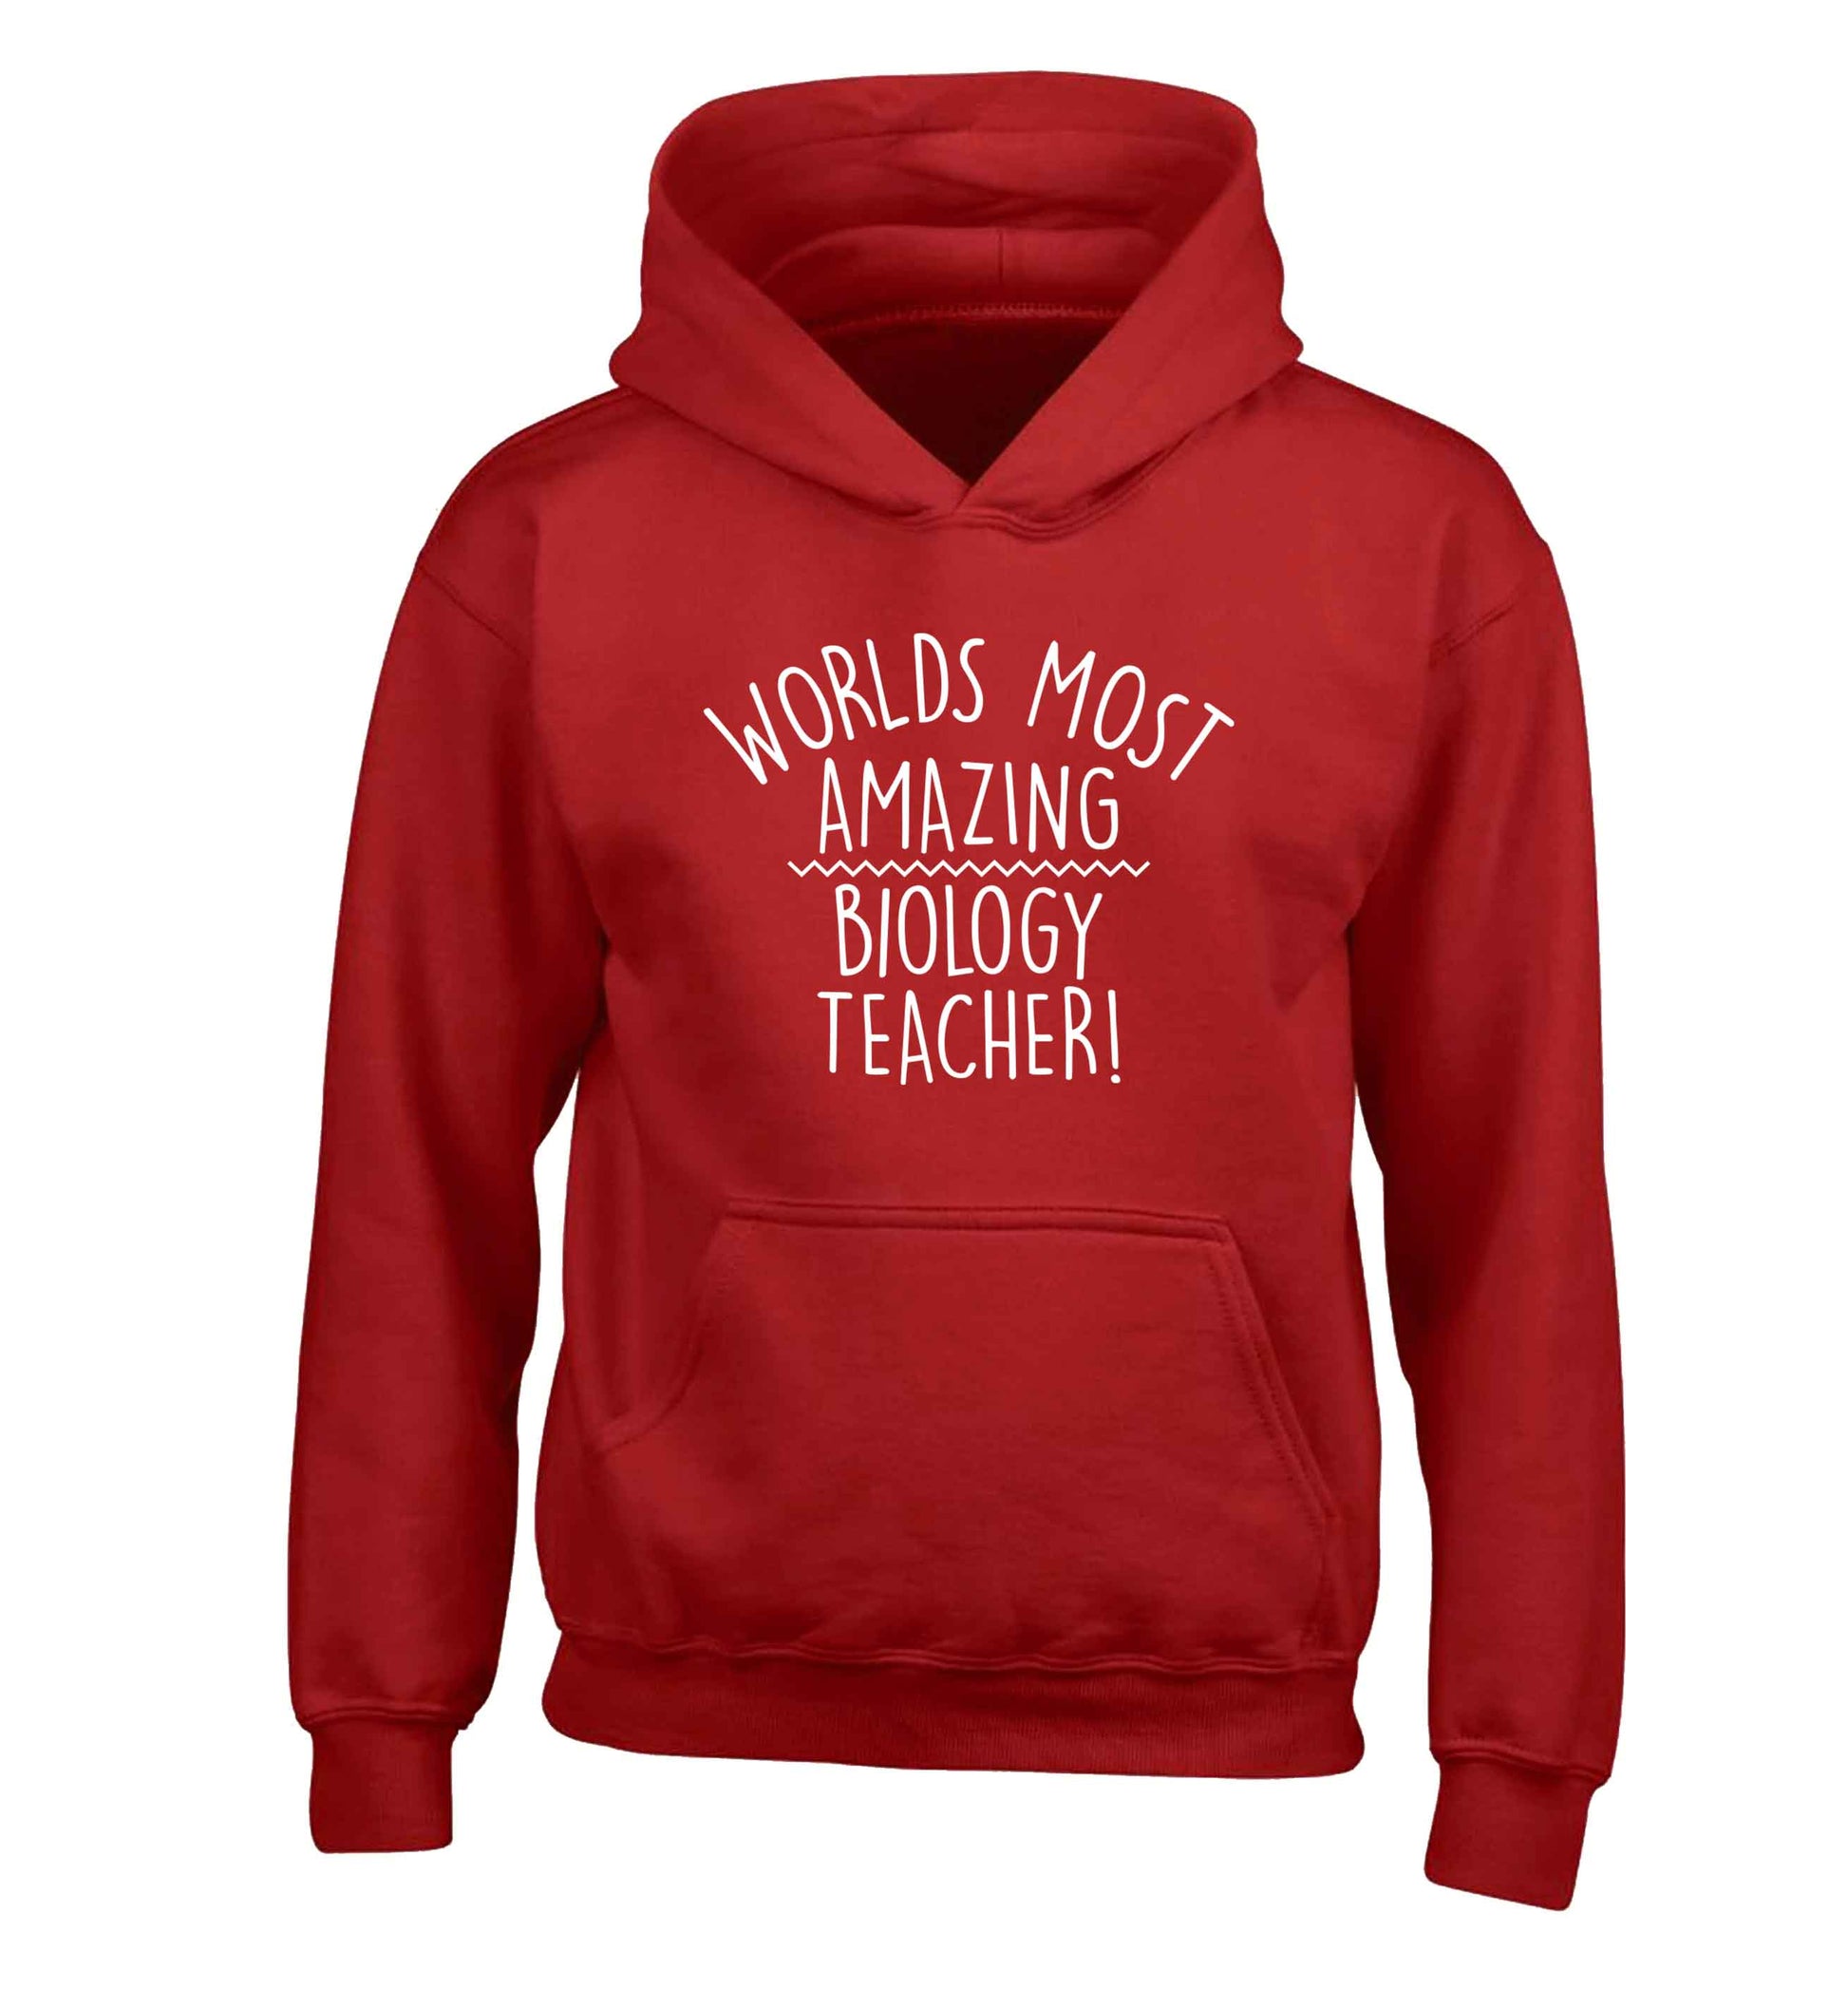 Worlds most amazing biology teacher children's red hoodie 12-13 Years